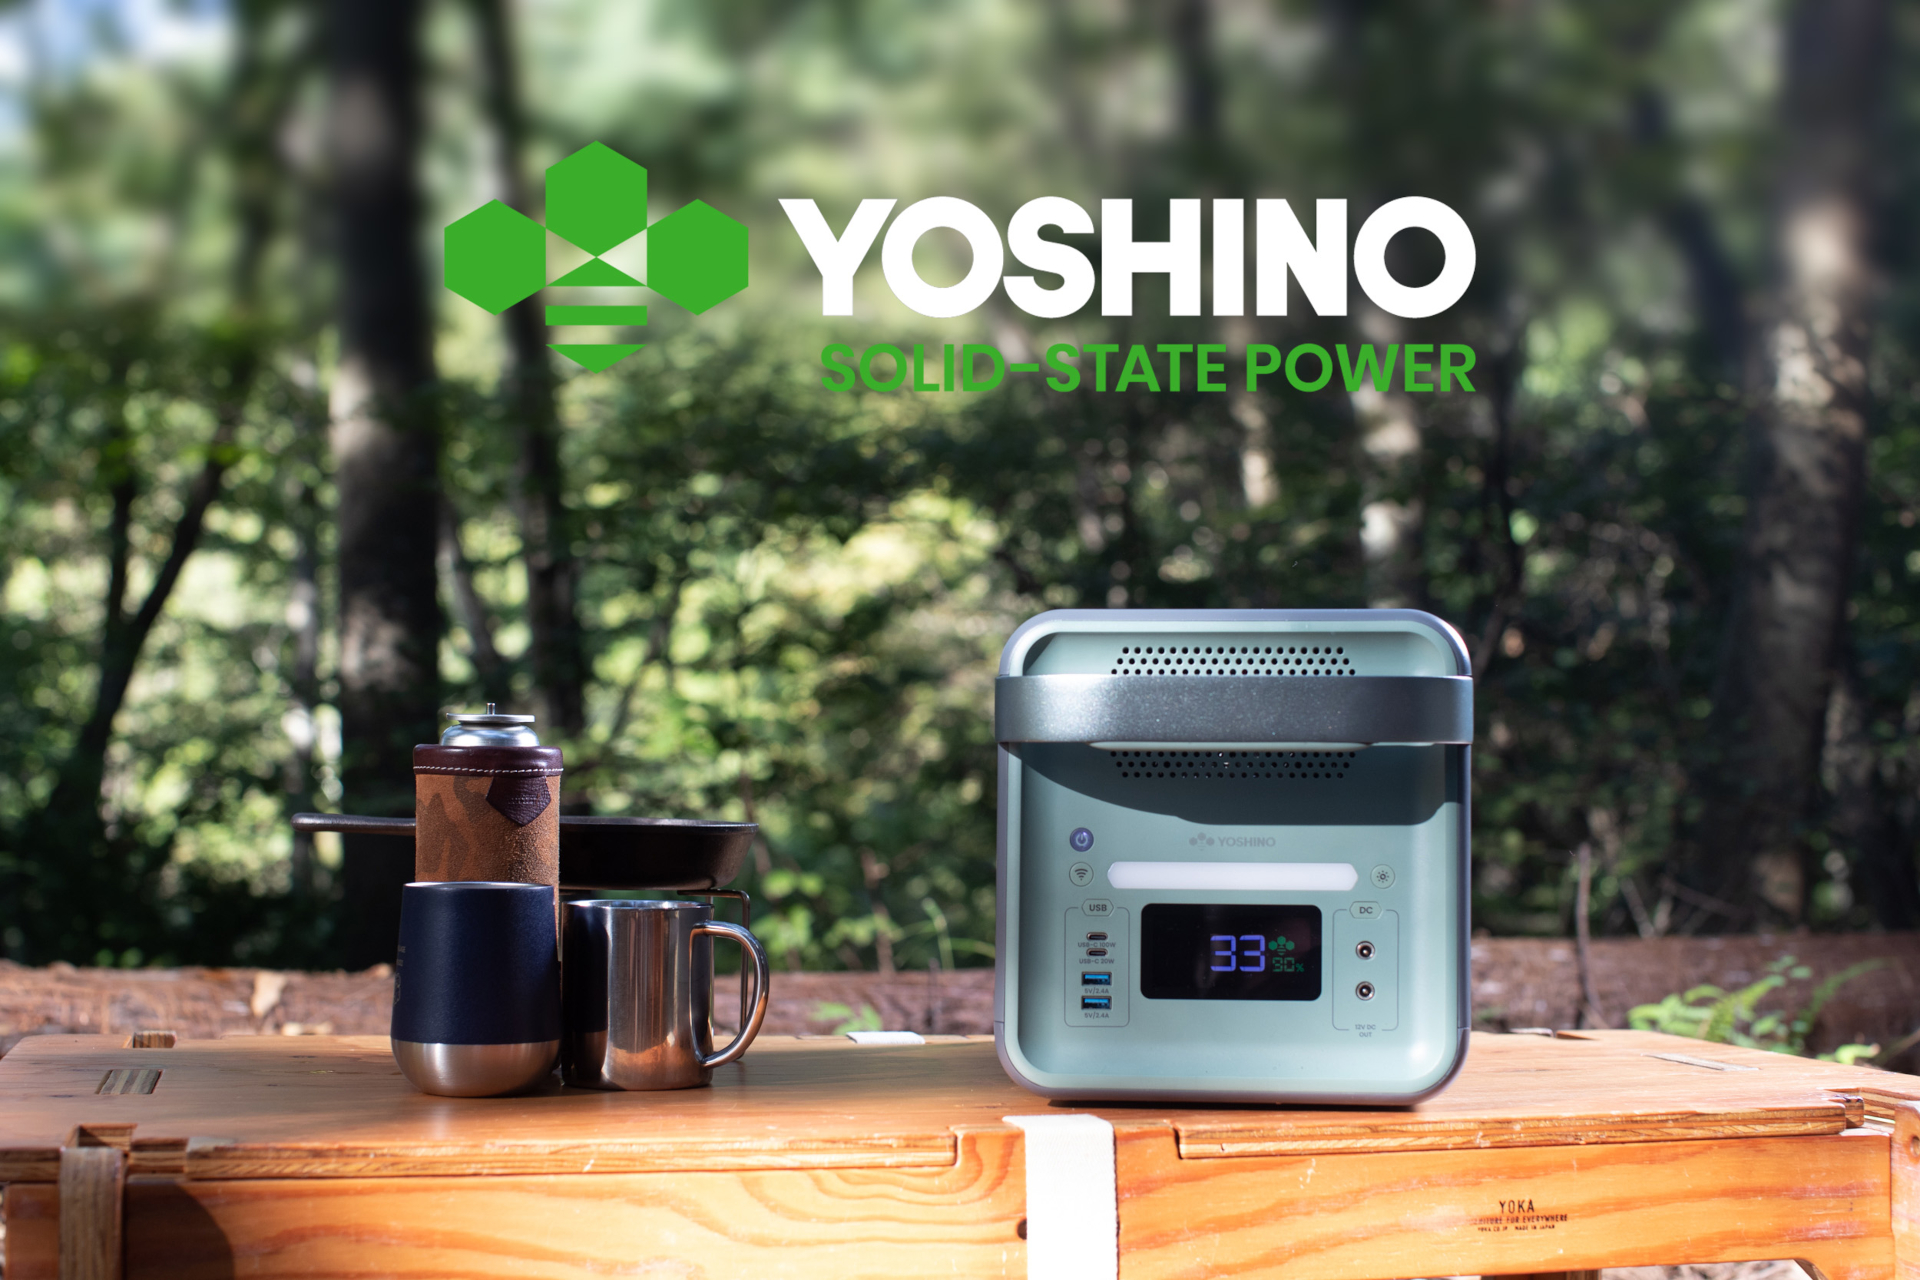 YOSHINO、固体電池ポータブル電源をAmazonで発売。241/602 